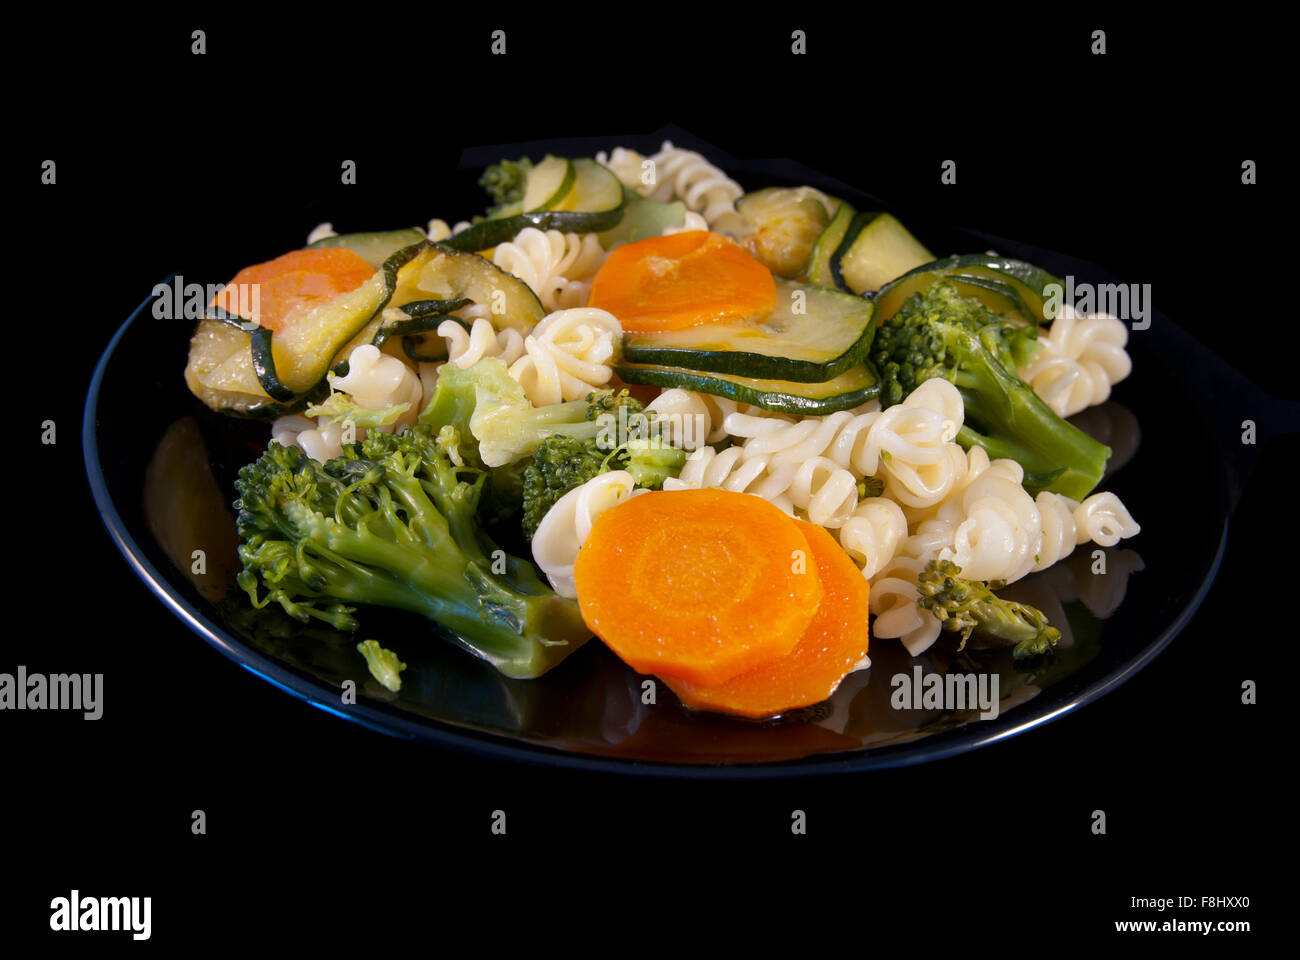 La pasta italiana Le girandole con broccoli, zucchine e carota Foto Stock